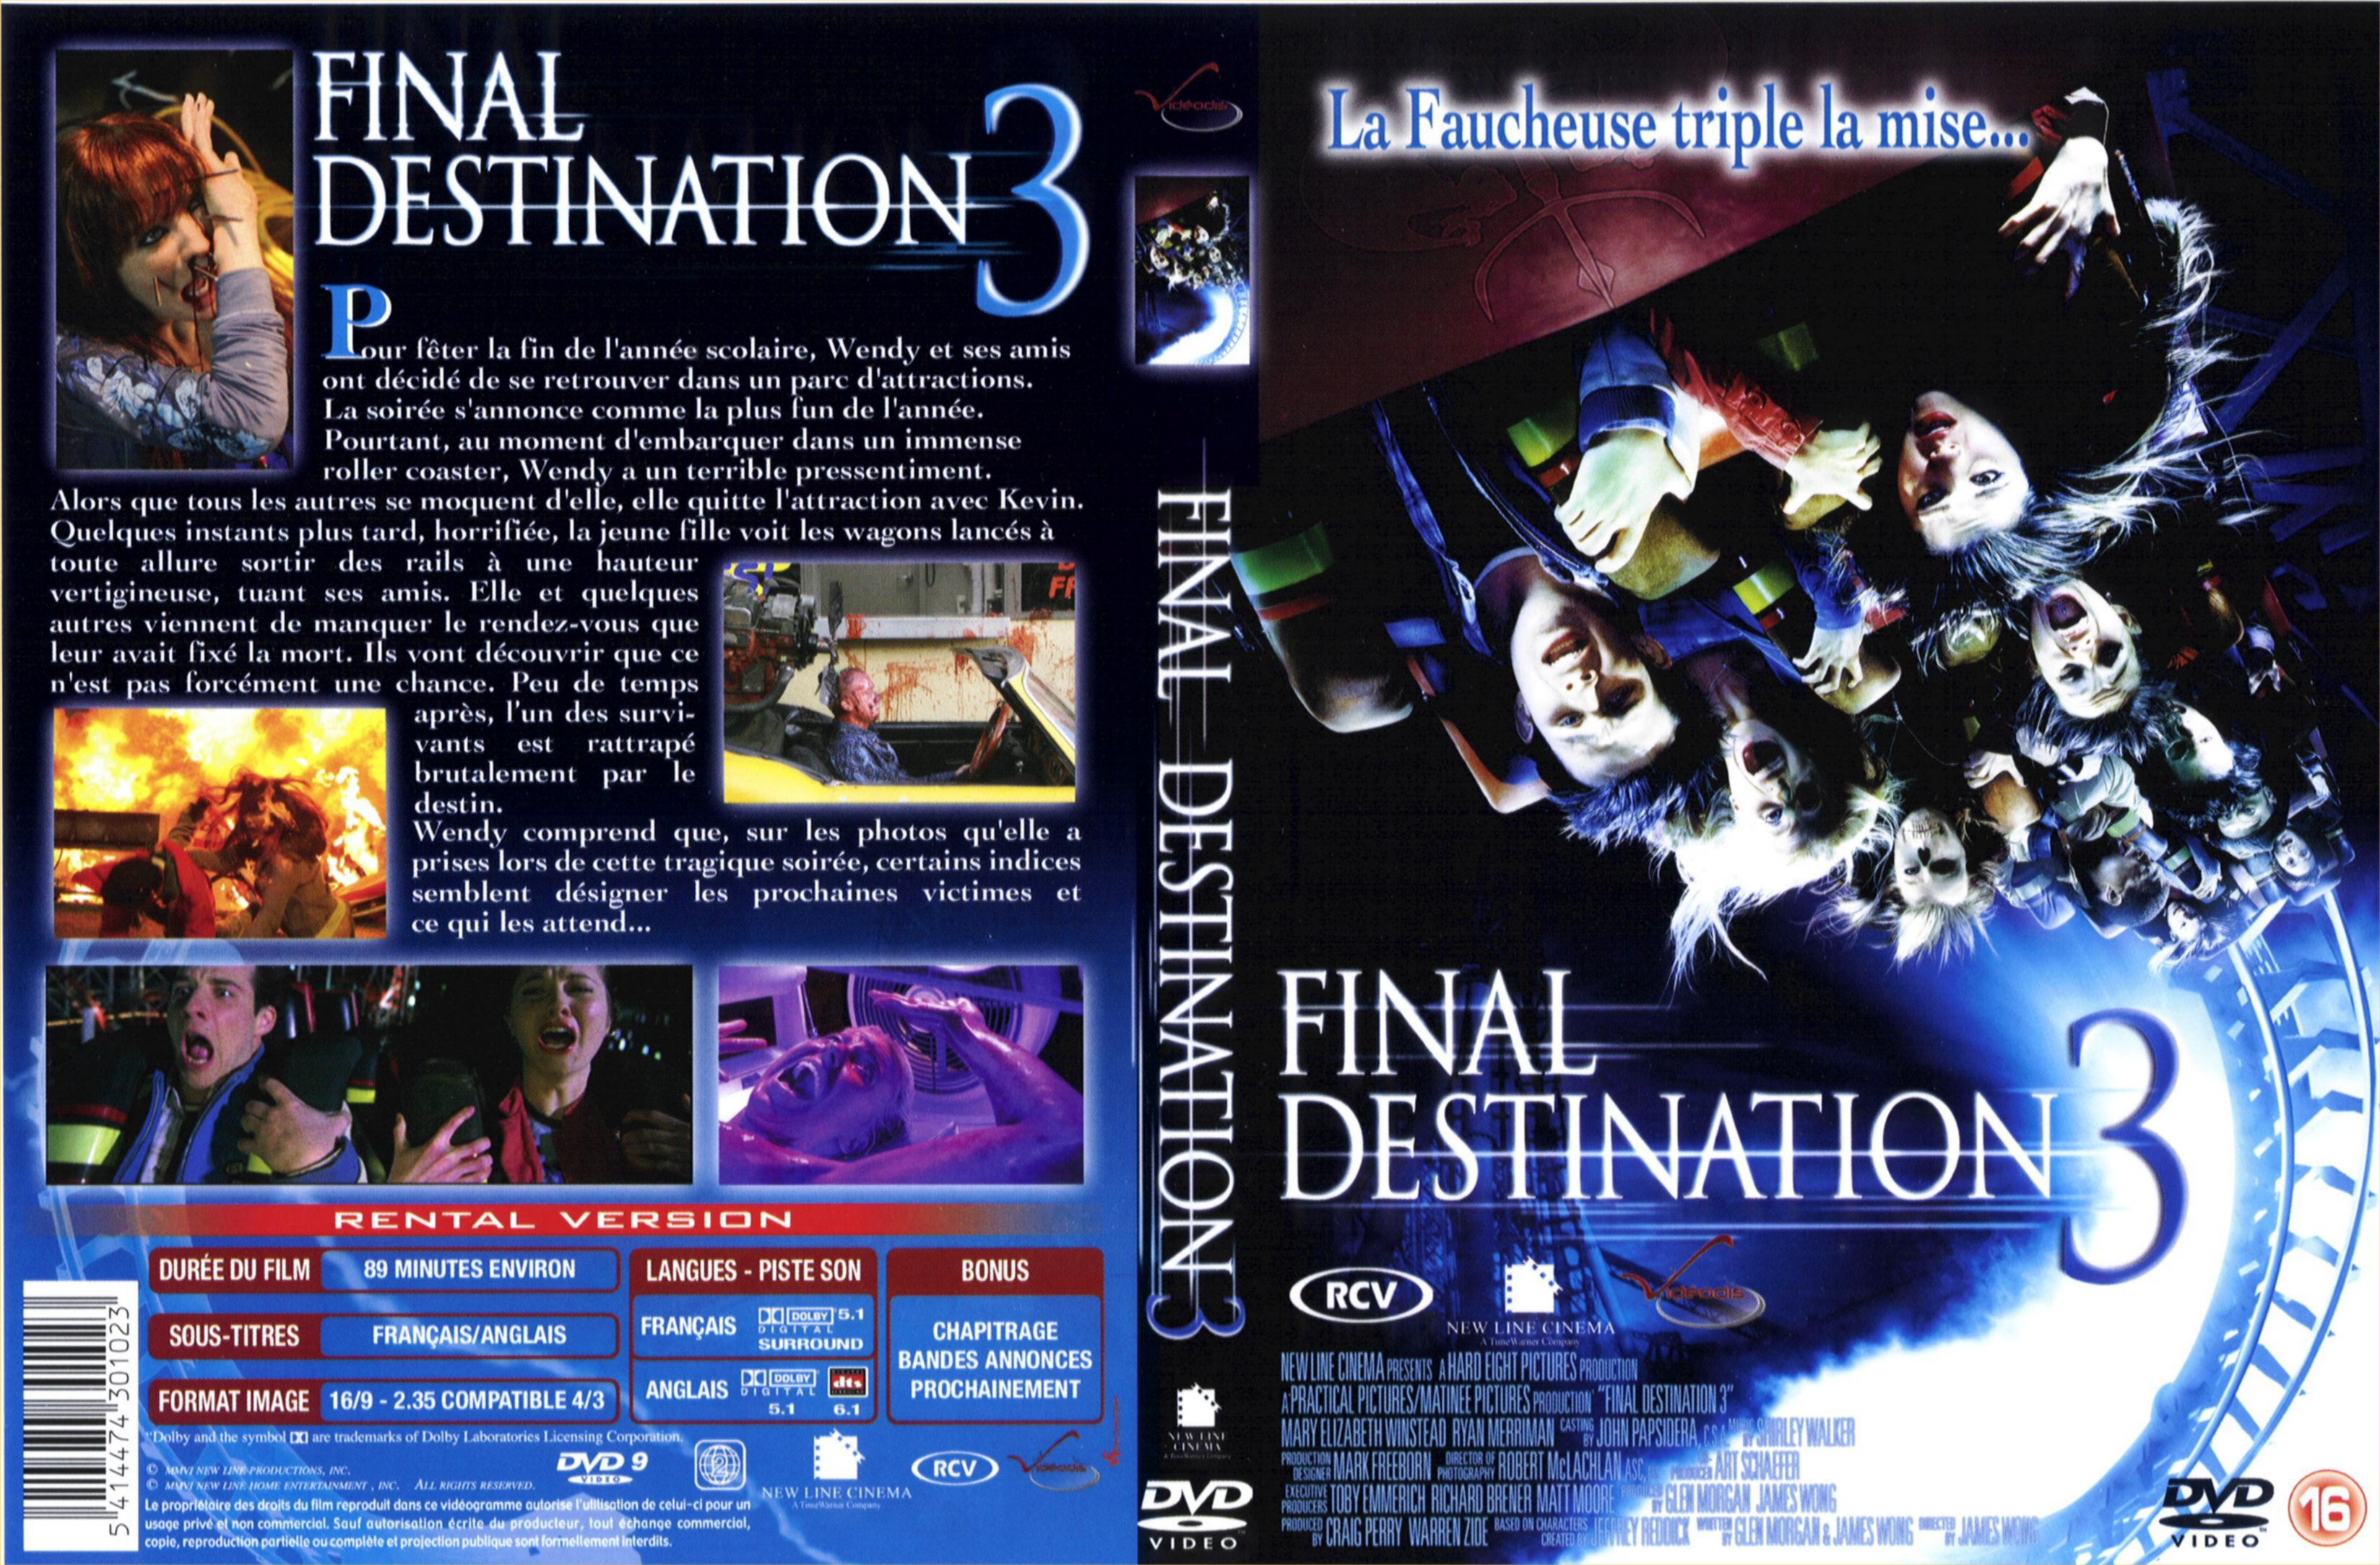 Jaquette DVD Destination finale 3 v3